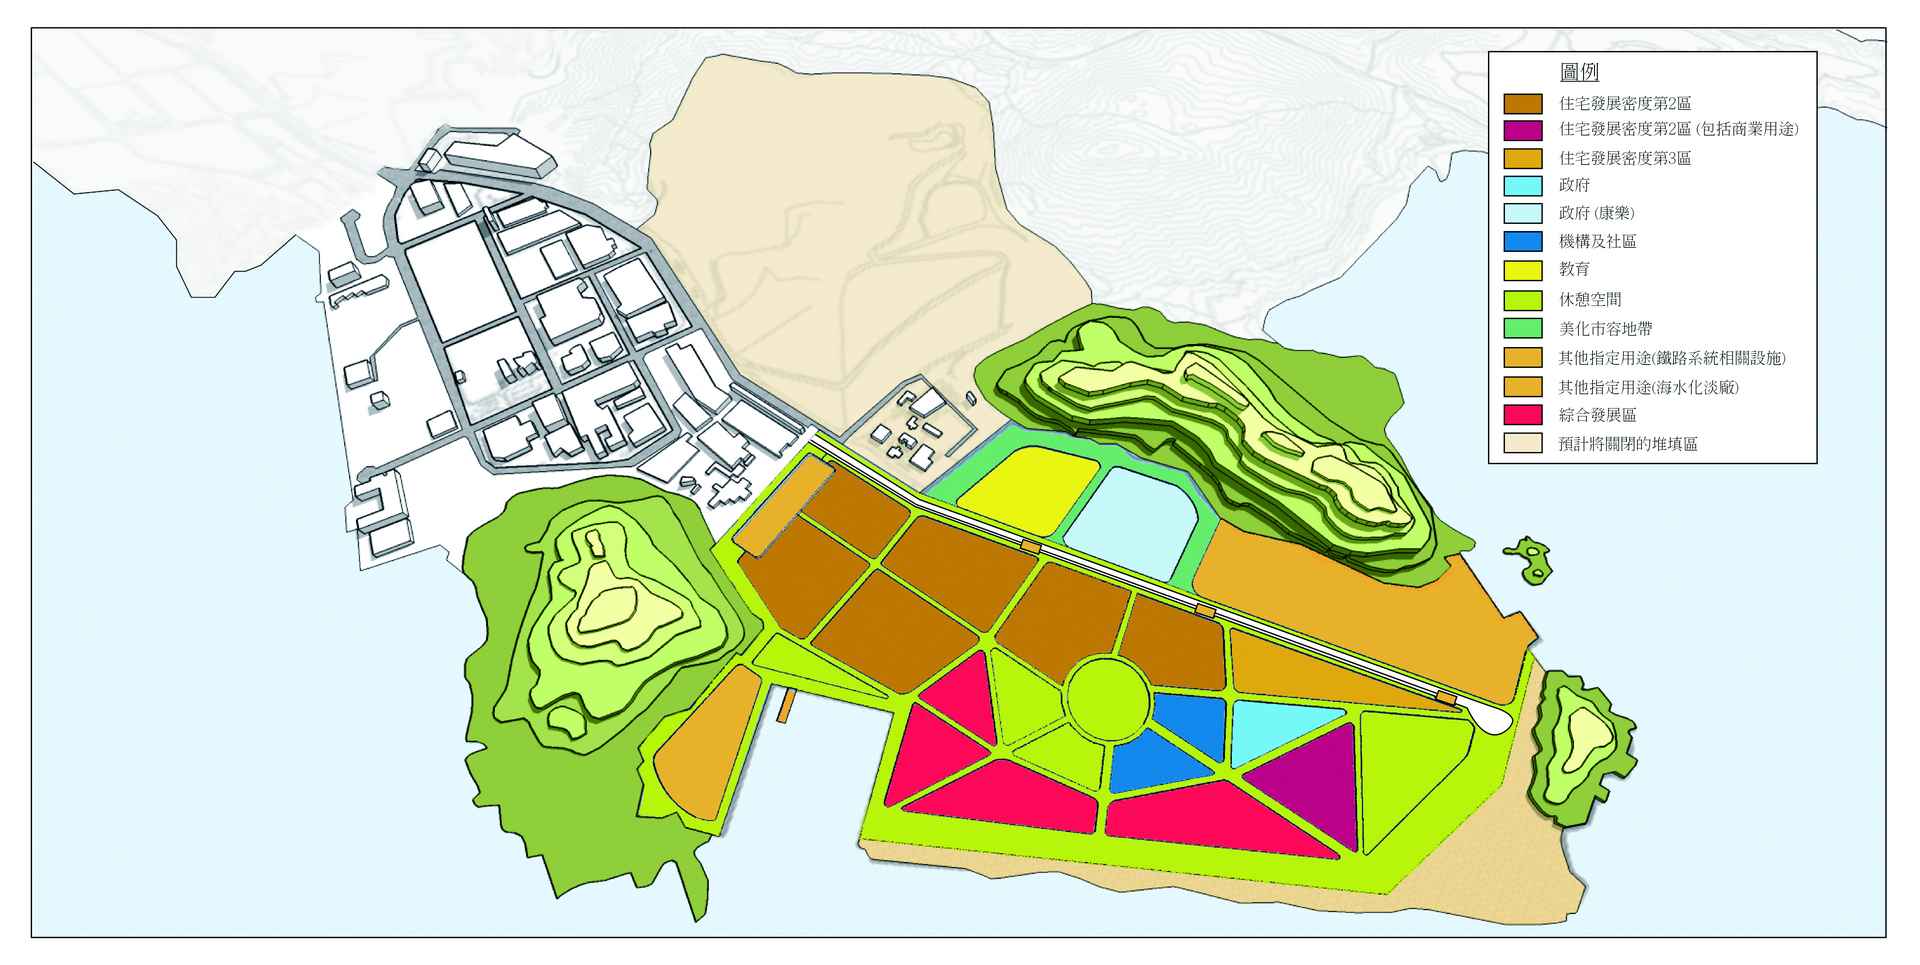 將軍澳137區的規劃想像 - 發展大綱總圖